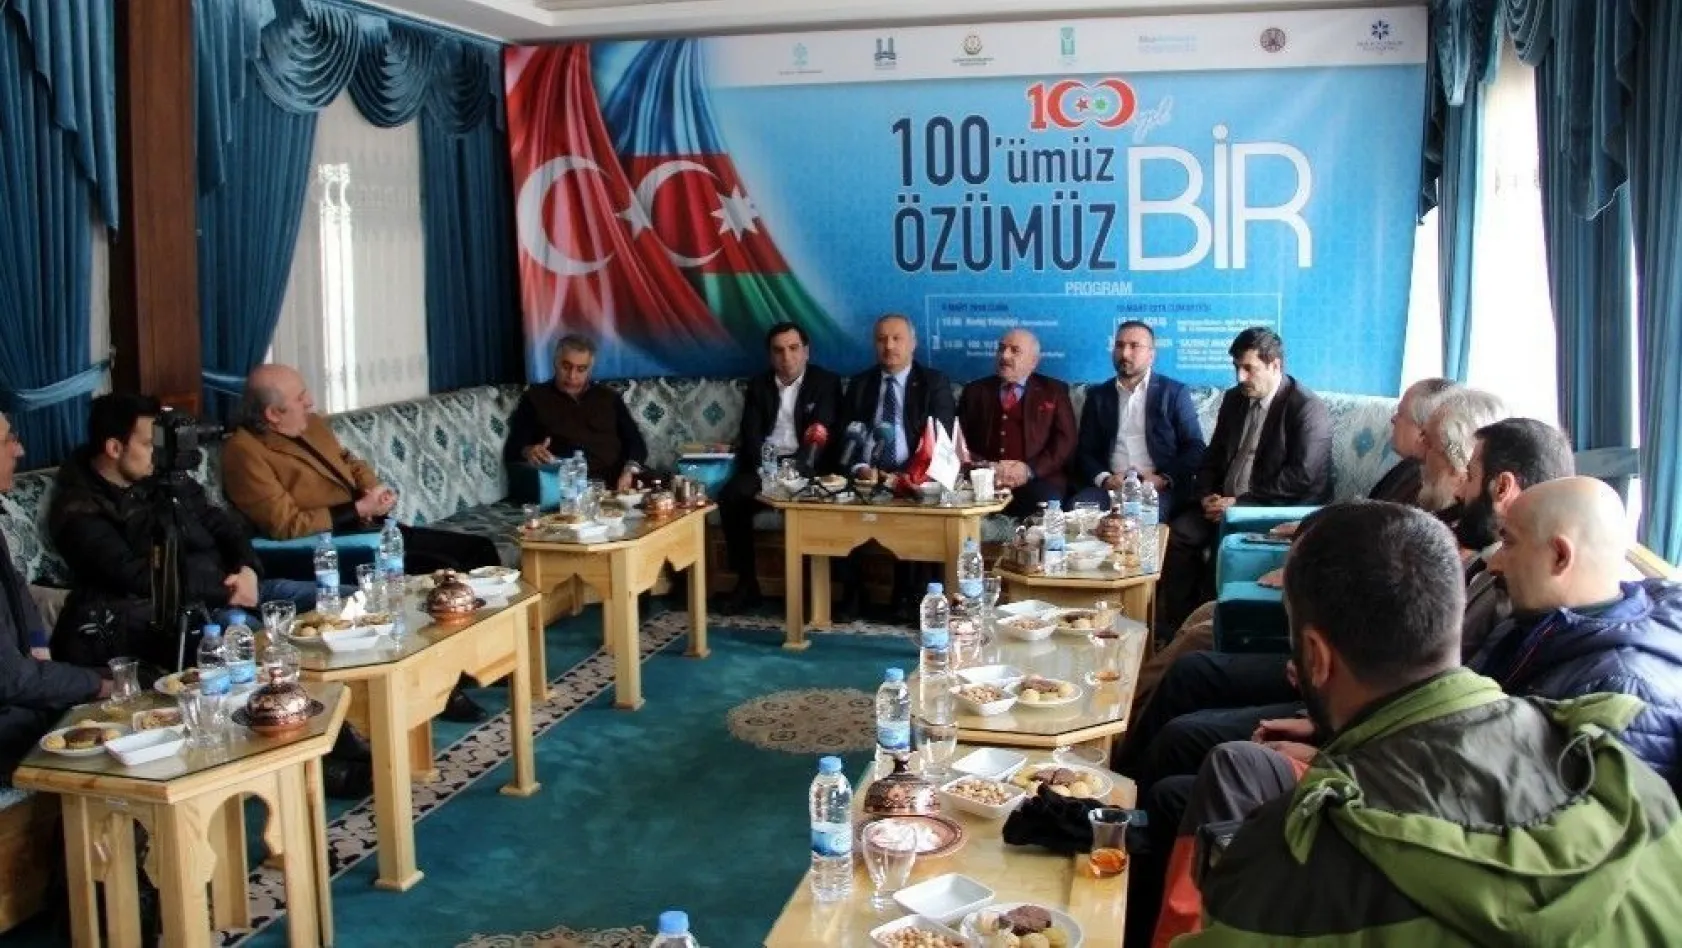 Erzurum'da '100'ümüz Özümüz Bir' toplantısı
